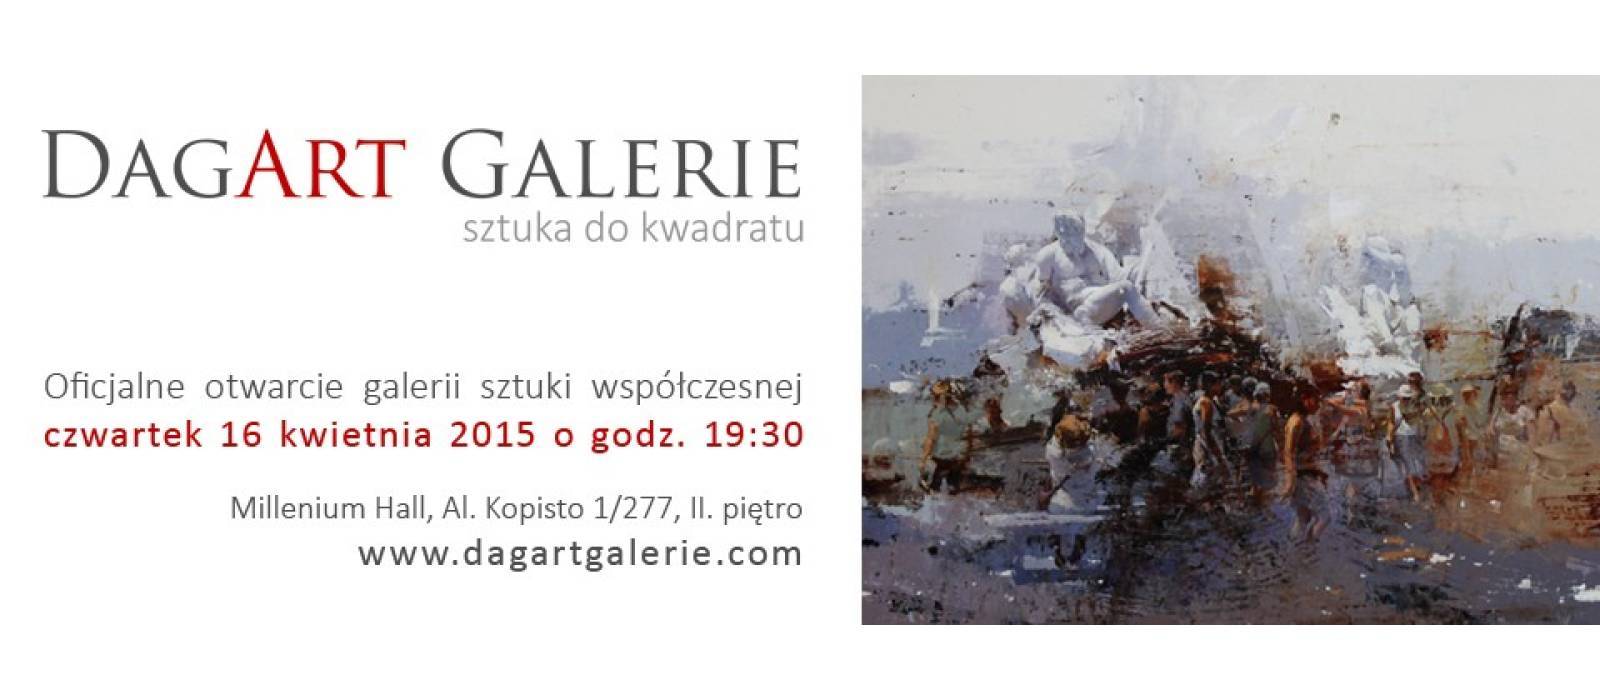 Otwarcie Dagart Galerie - 1